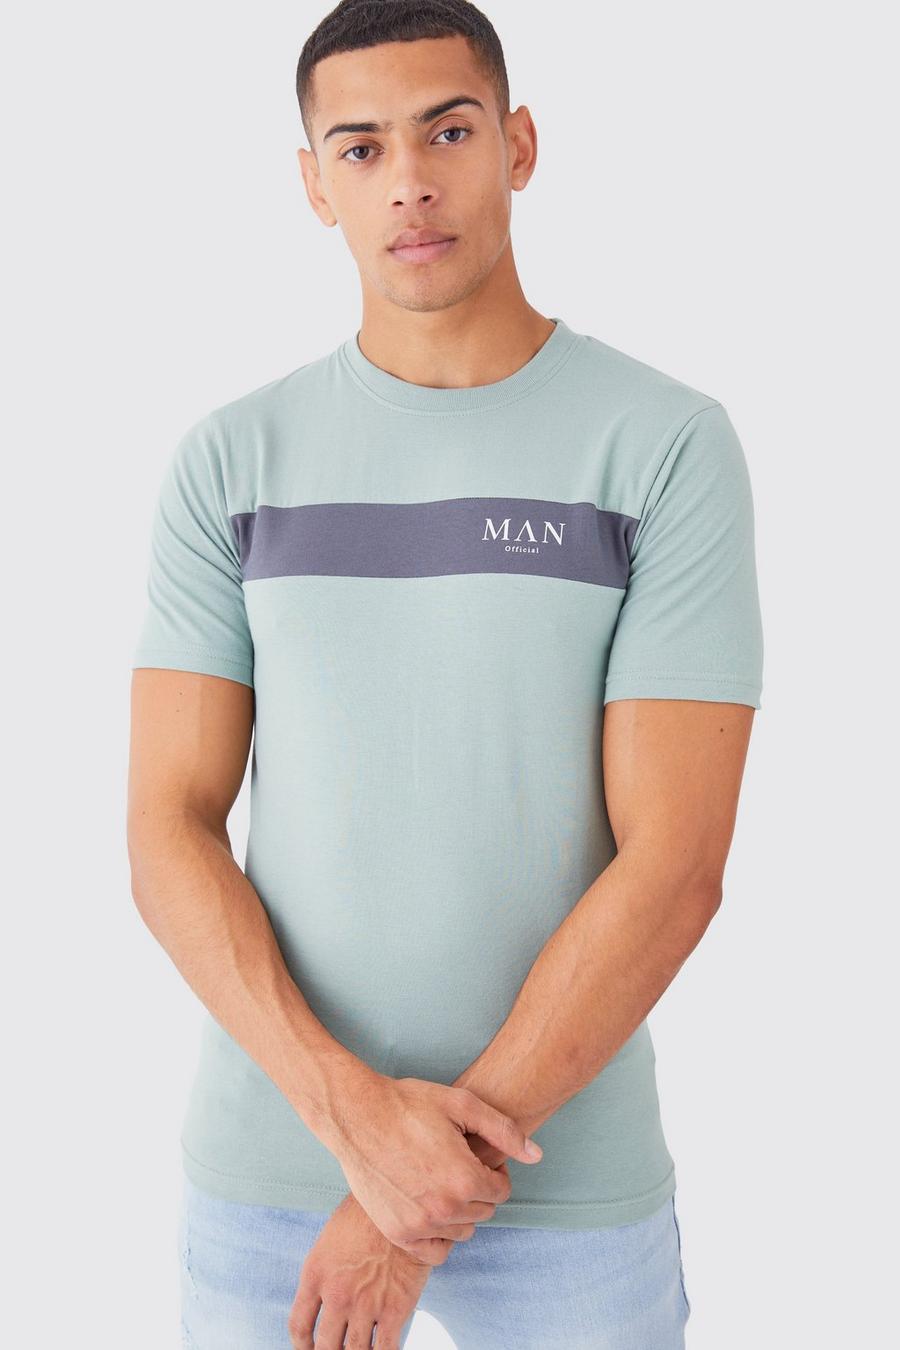 Camiseta MAN con letras romanas ajustada al músculo con colores en bloque, Sage